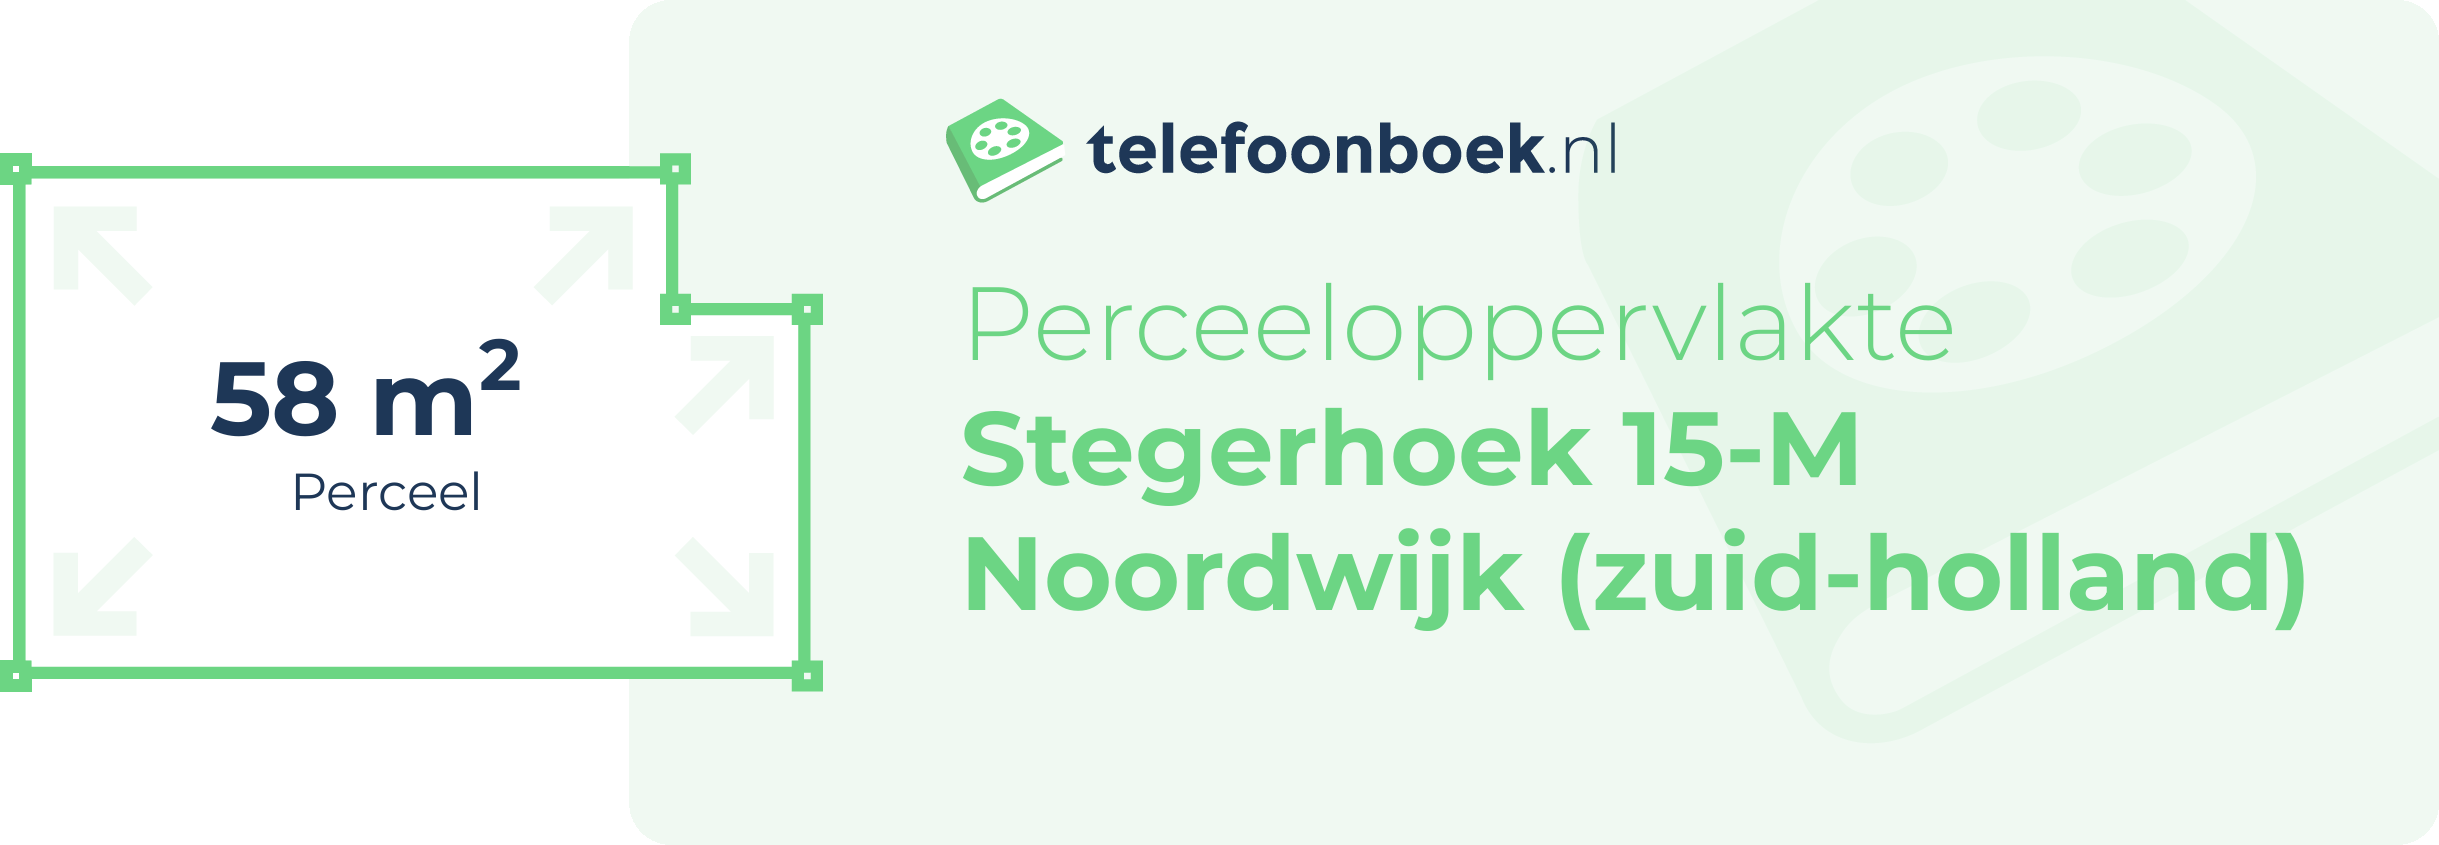 Perceeloppervlakte Stegerhoek 15-M Noordwijk (Zuid-Holland)